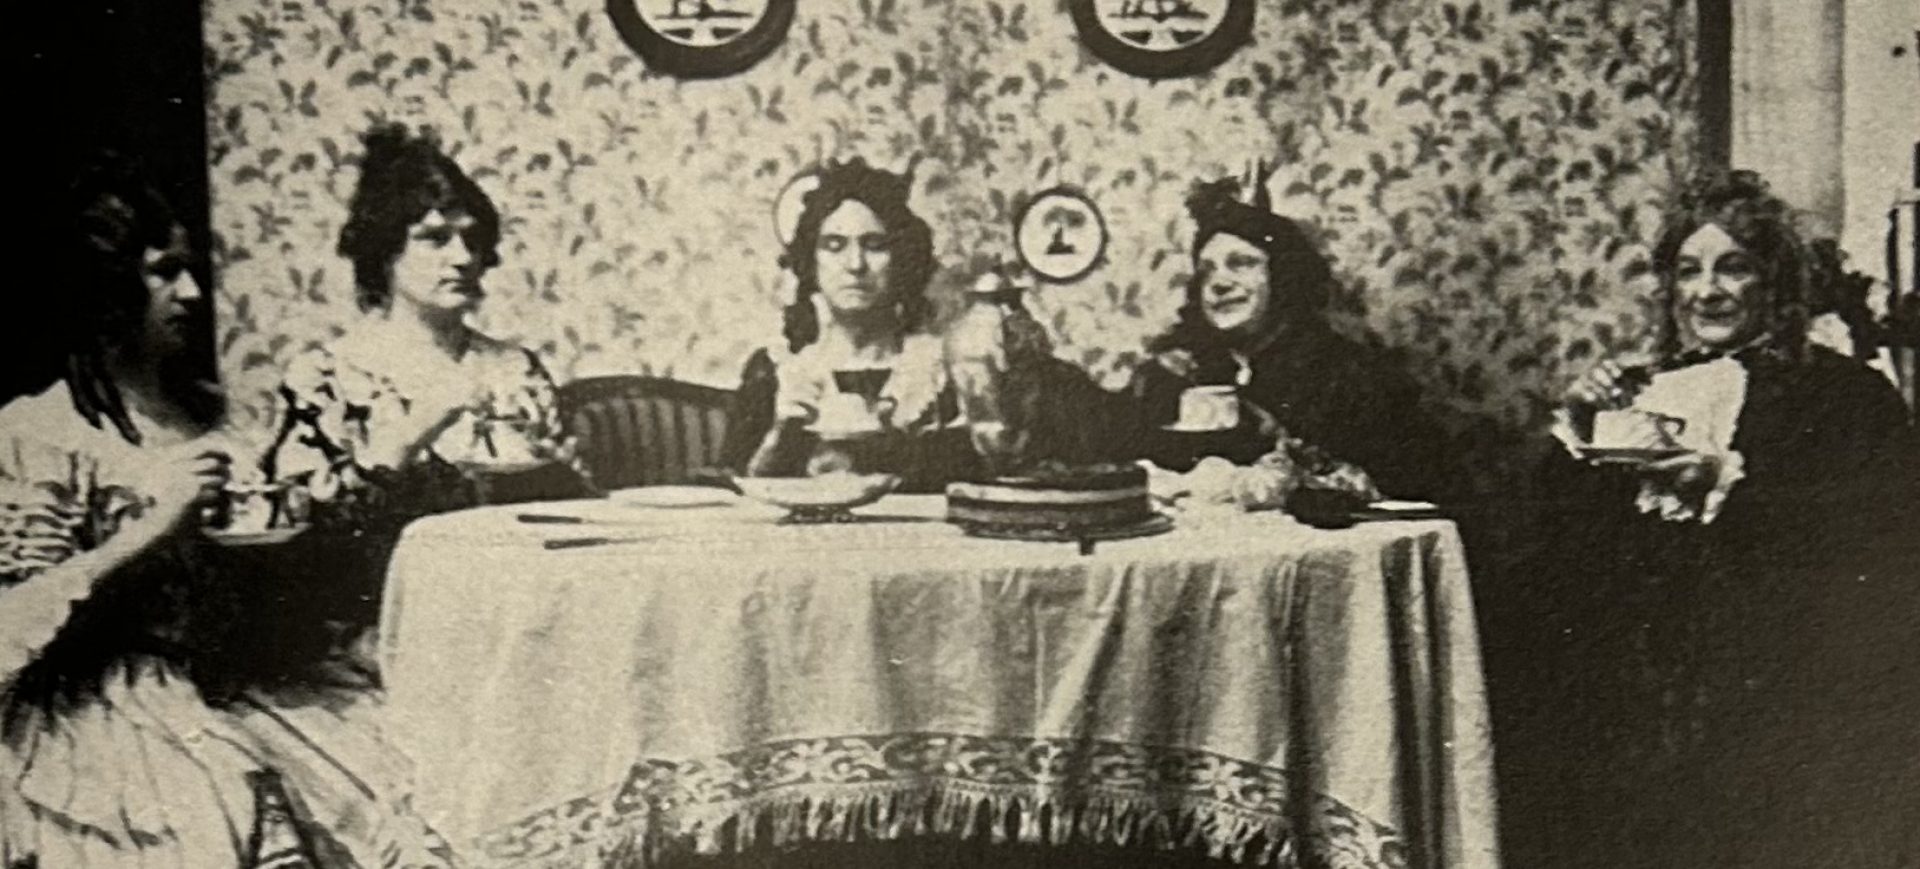 Vun Meddernacks bes Morgens - Divertissementchen 1929 - Damen beim Kaffekränzchen